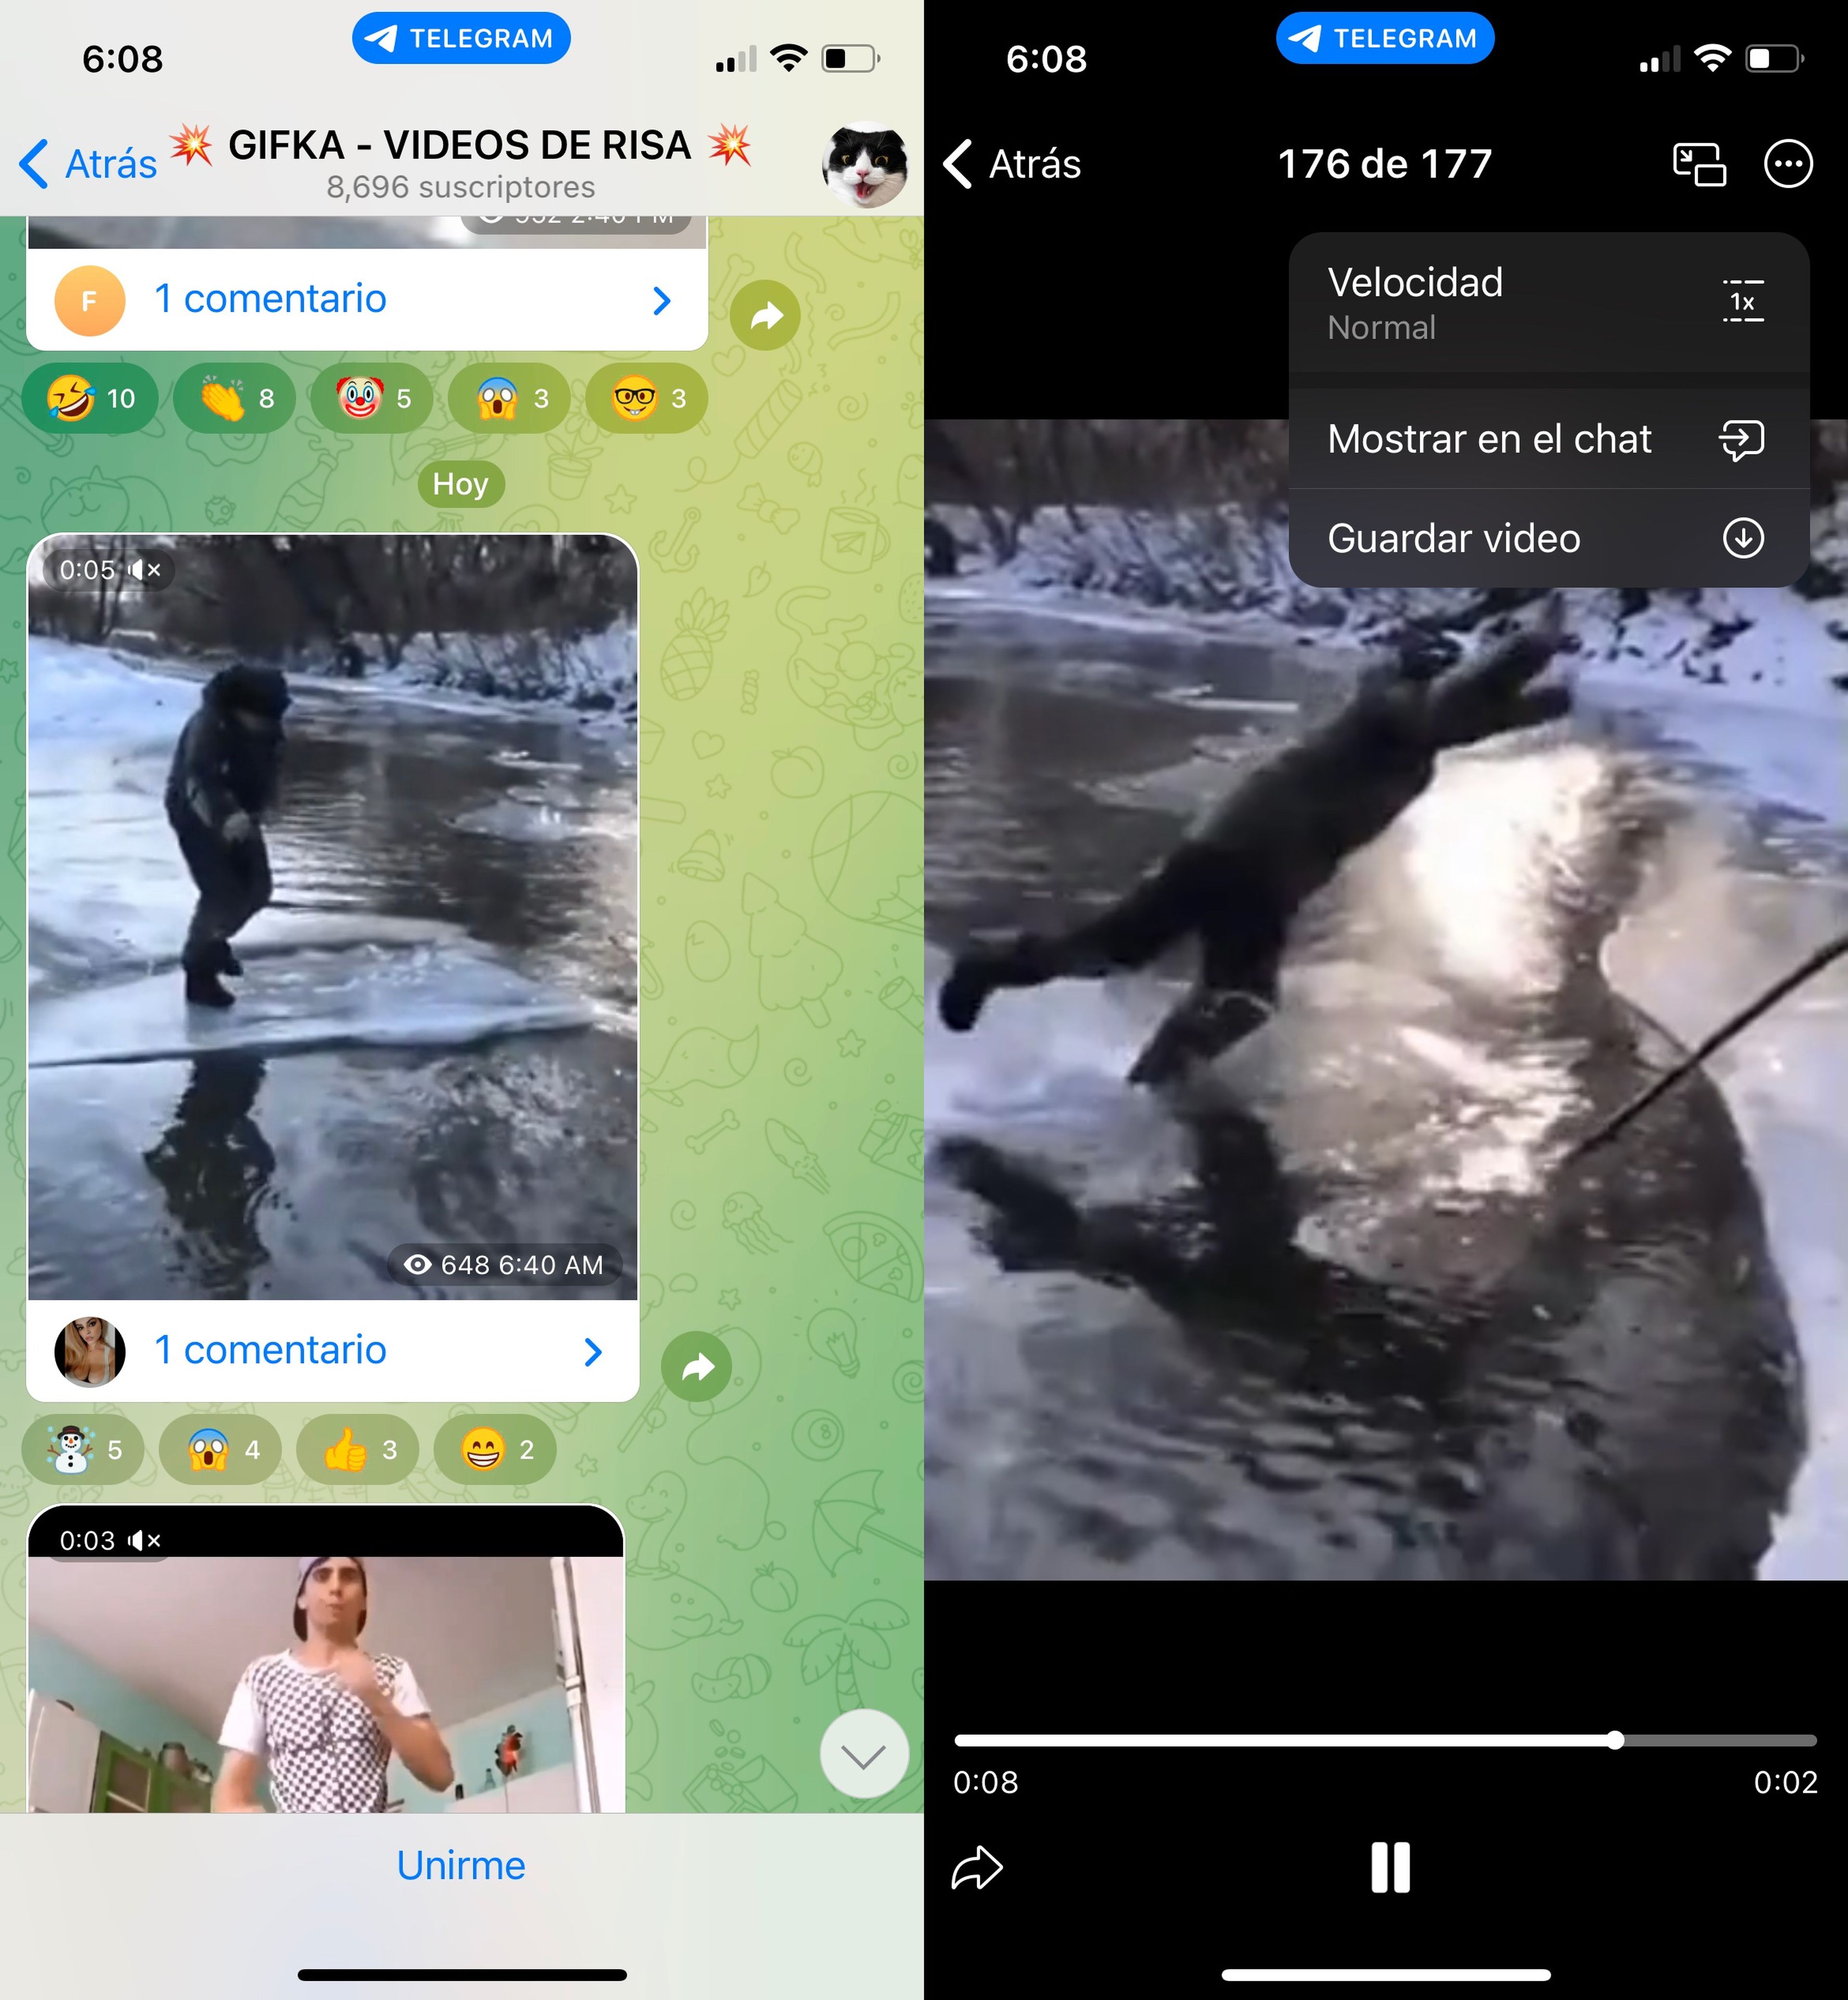 Descargar vídeos desde la aplicación oficial de Telegram 